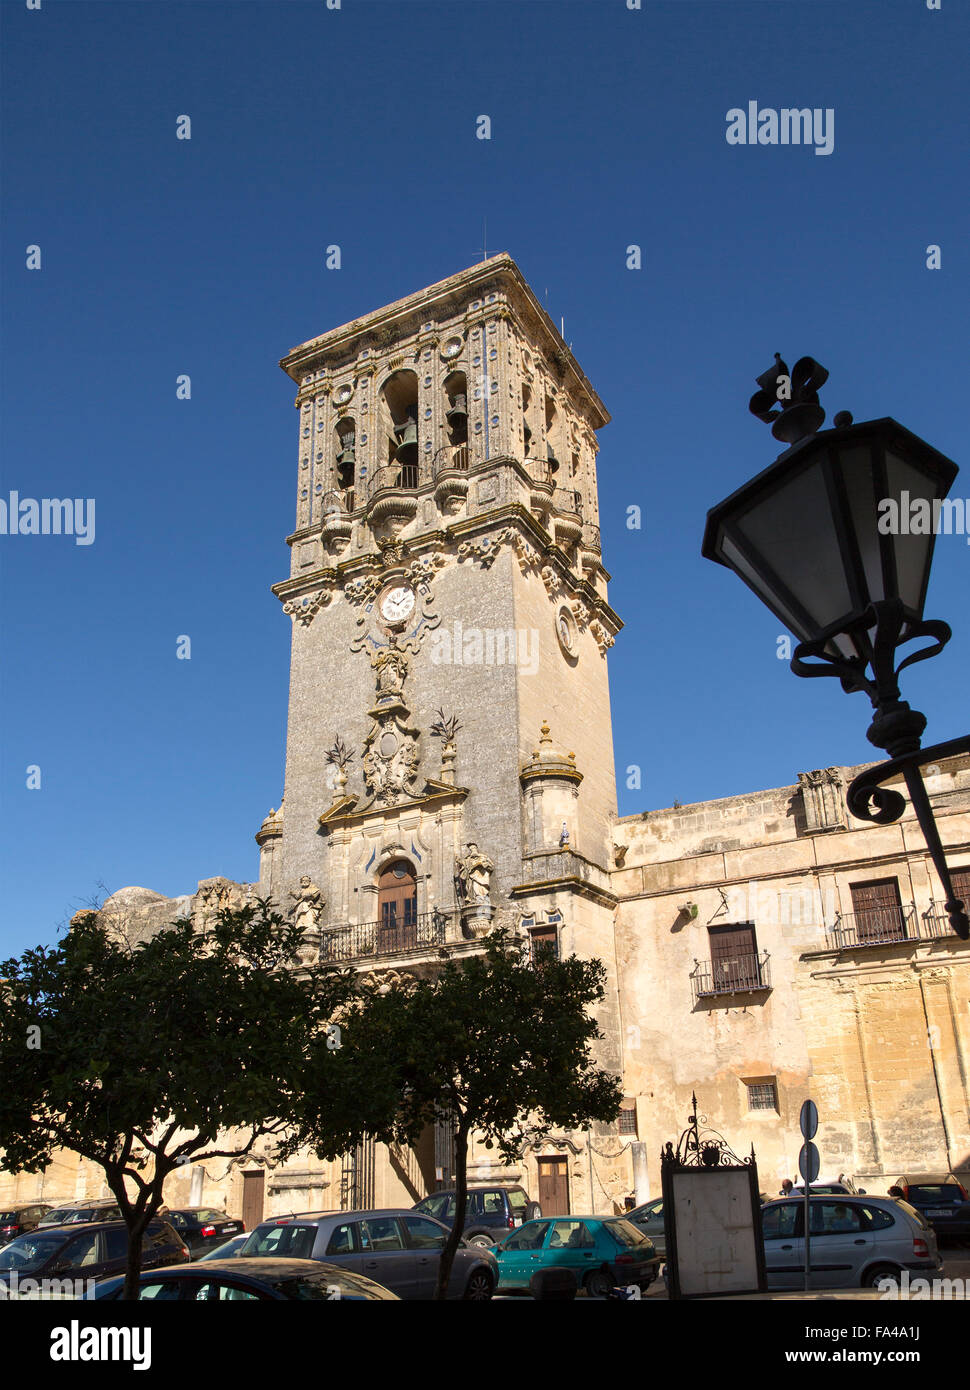 Tower of church Santa Maria de la Asuncion, Plaza del Cabildo, village of Arcos de la Frontera, Spain Stock Photo